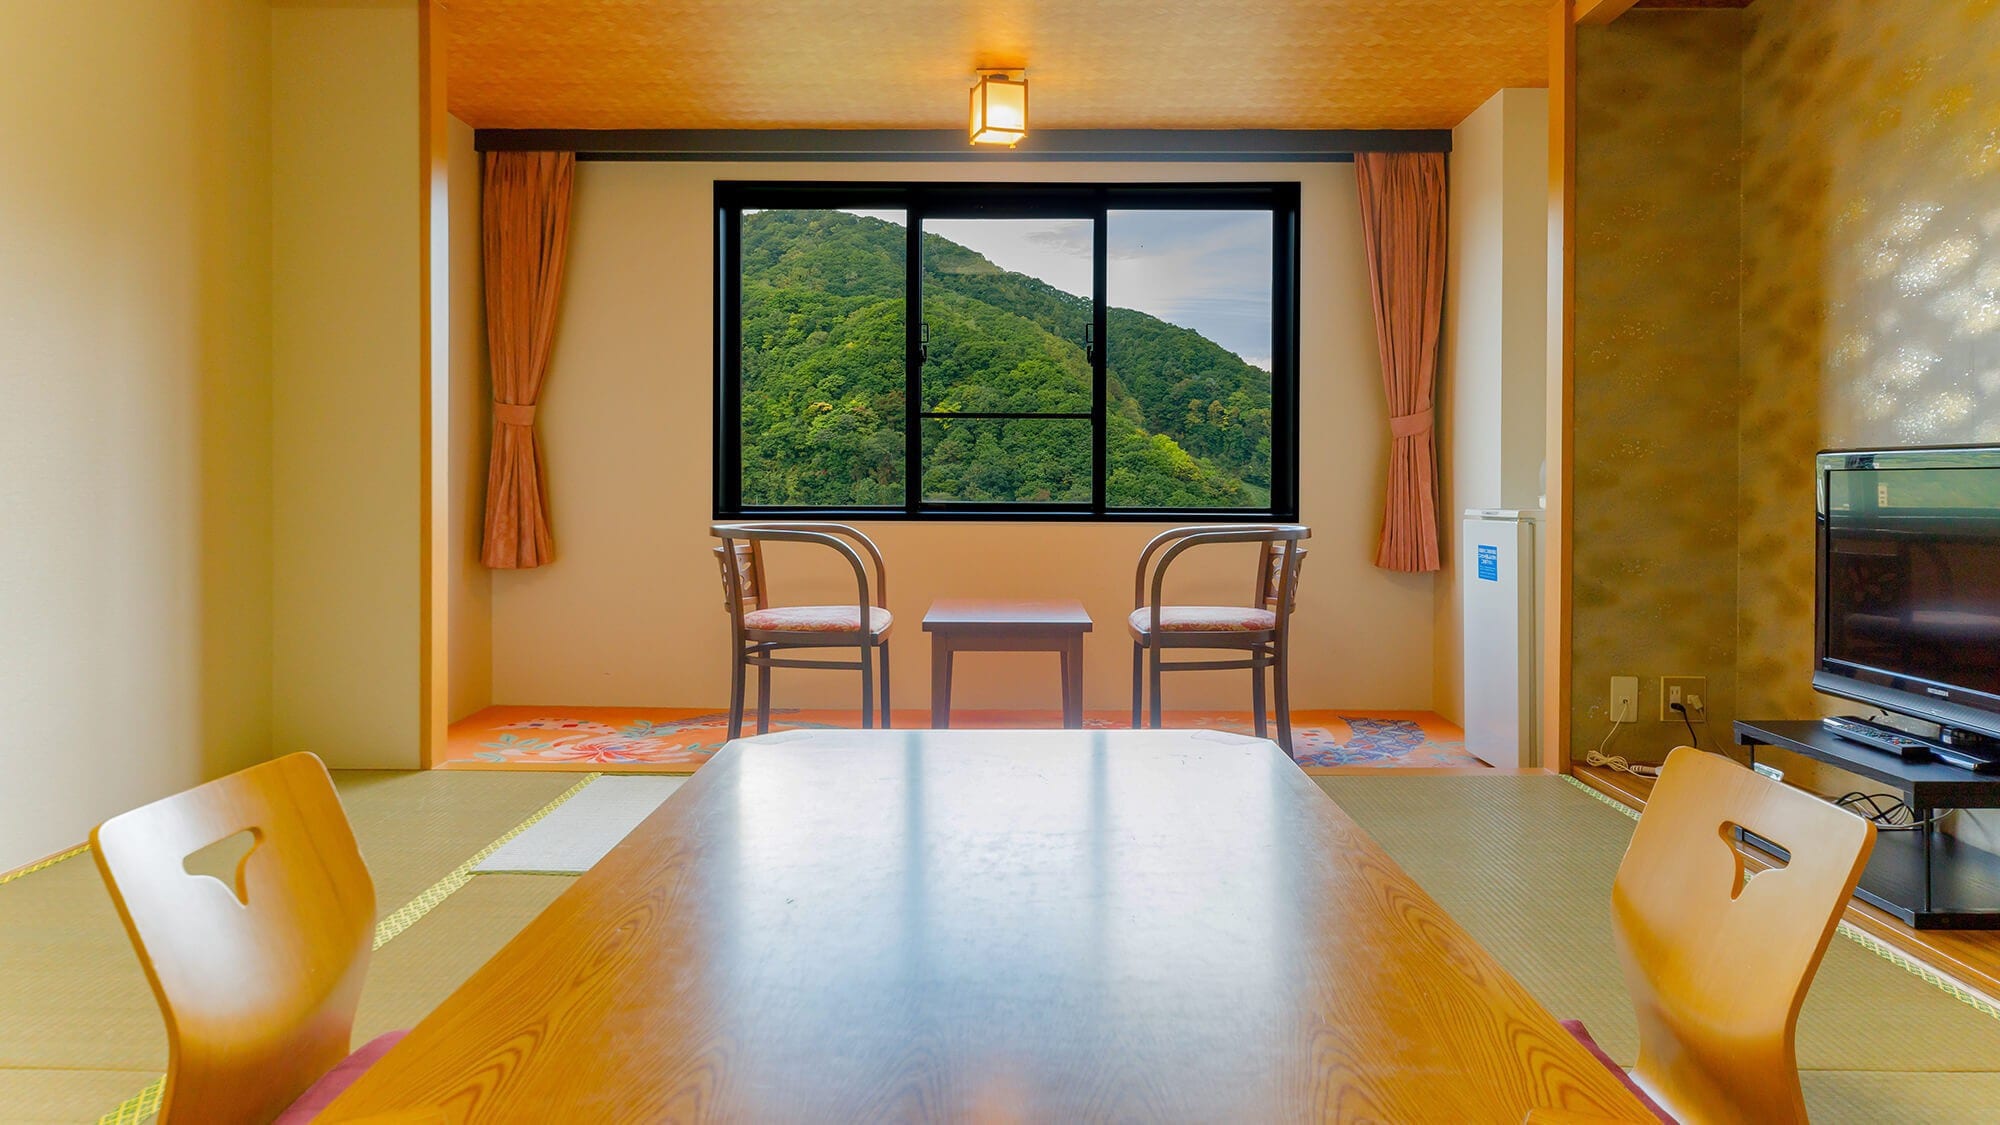 [Main building] Japanese-style room 8-10 tatami mats / Main building Japanese-style room ideal for those who want to travel reasonably.